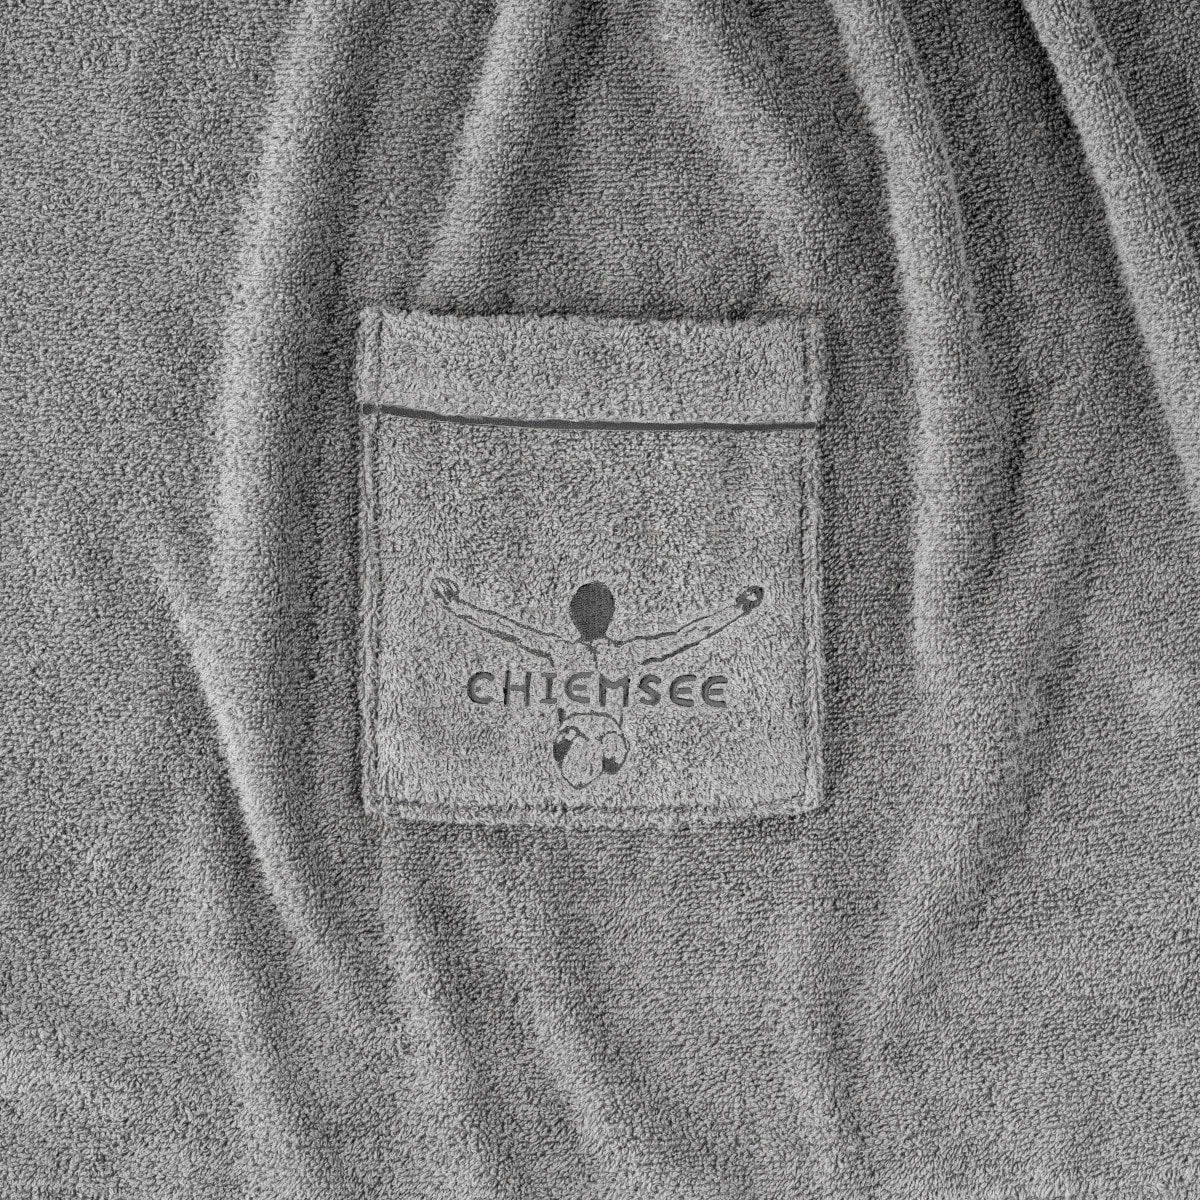 versandkostenfrei (1 Saunakilt Herren Venice«, Kilt »Chiemsee auf St.), auf der Logostickerei Tasche Chiemsee